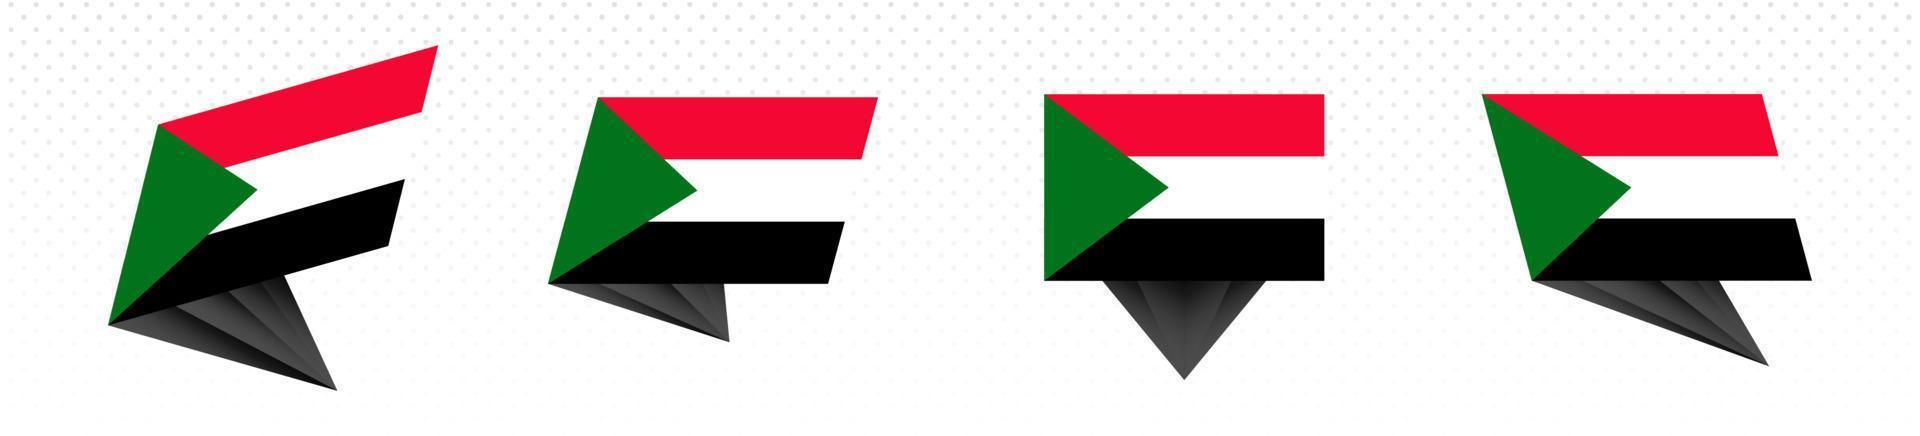 drapeau du soudan dans un dessin abstrait moderne, ensemble de drapeaux. vecteur